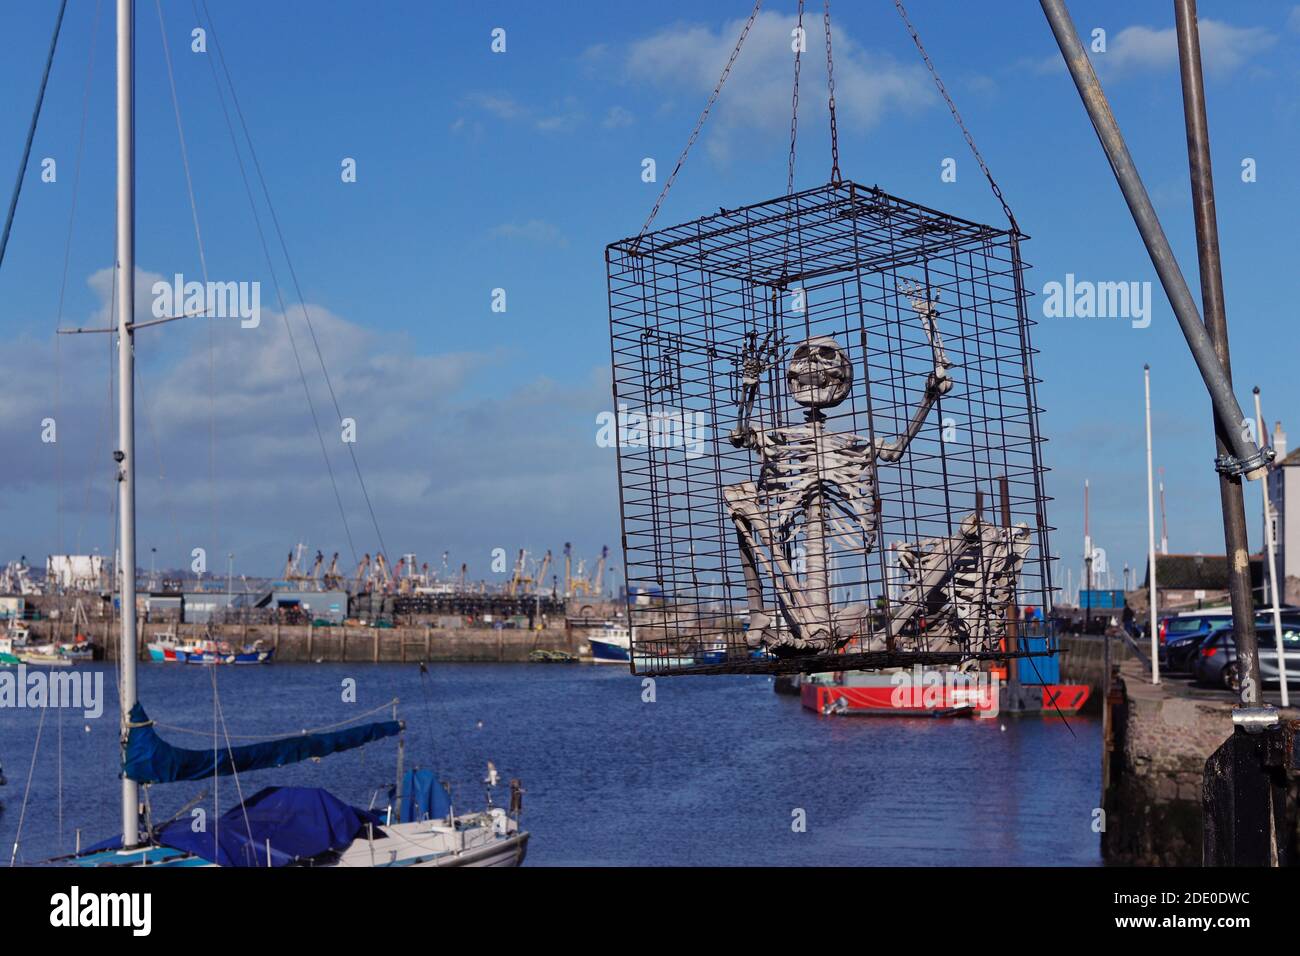 Squelette dans une cage suspendue au-dessus du port à Brixham, Devon Banque D'Images